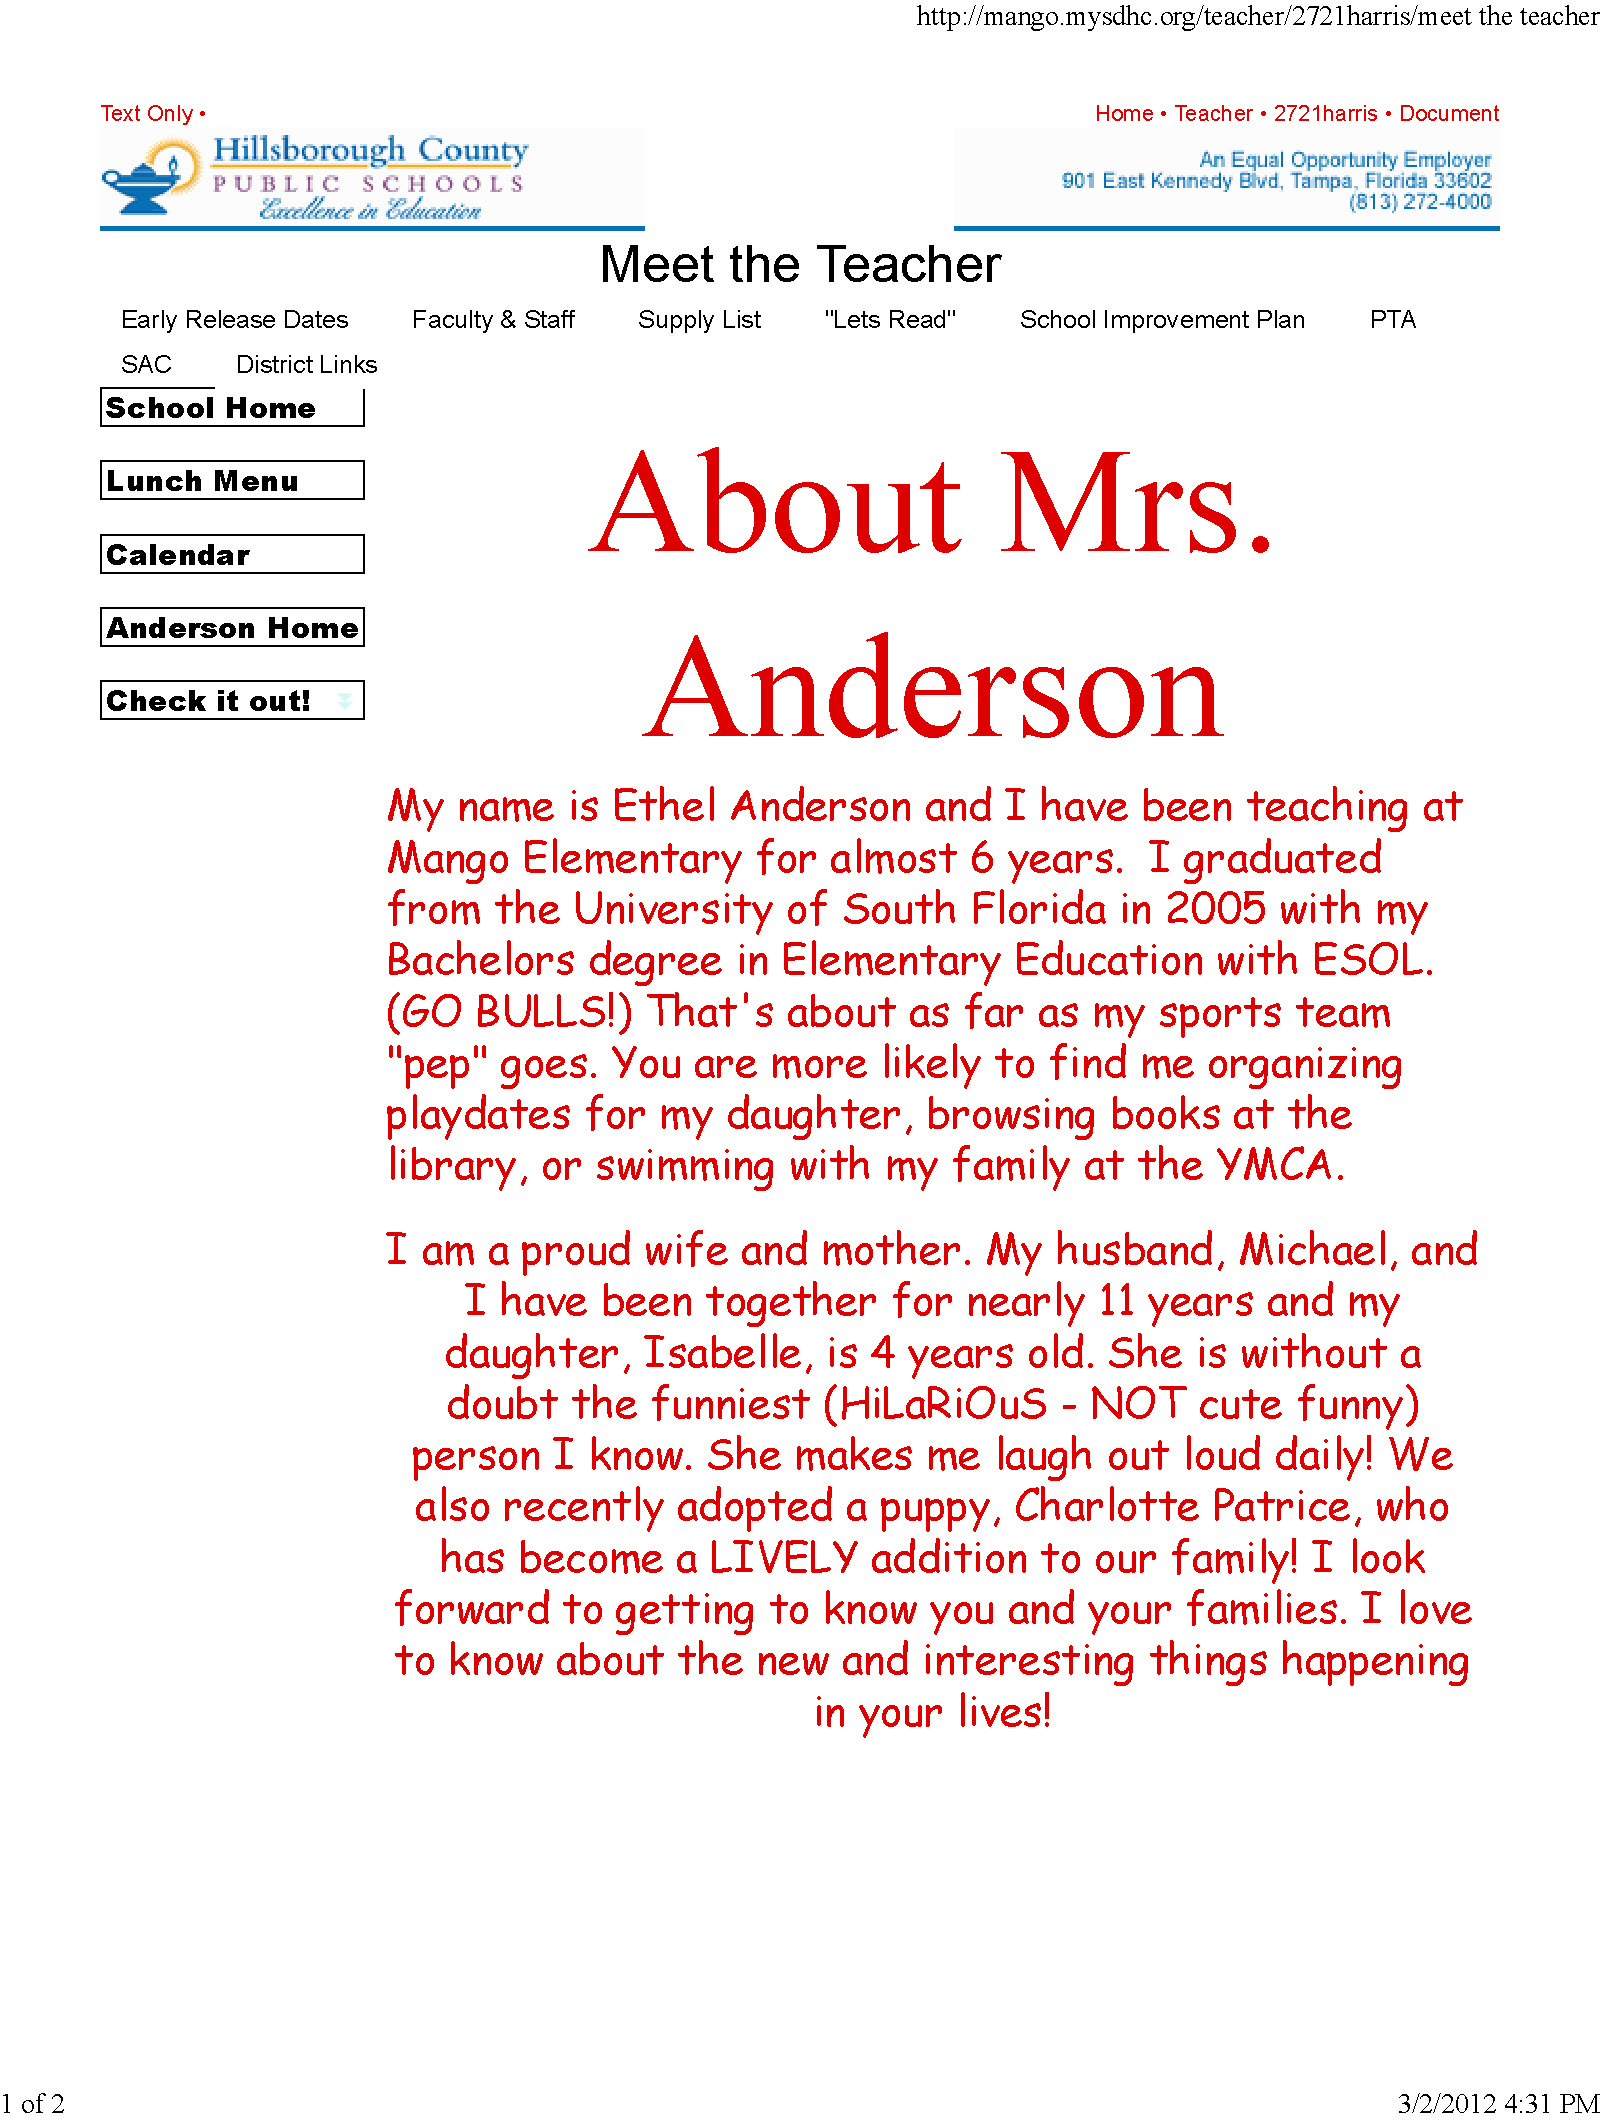 Copy of anderson ethel profile page1.jpg